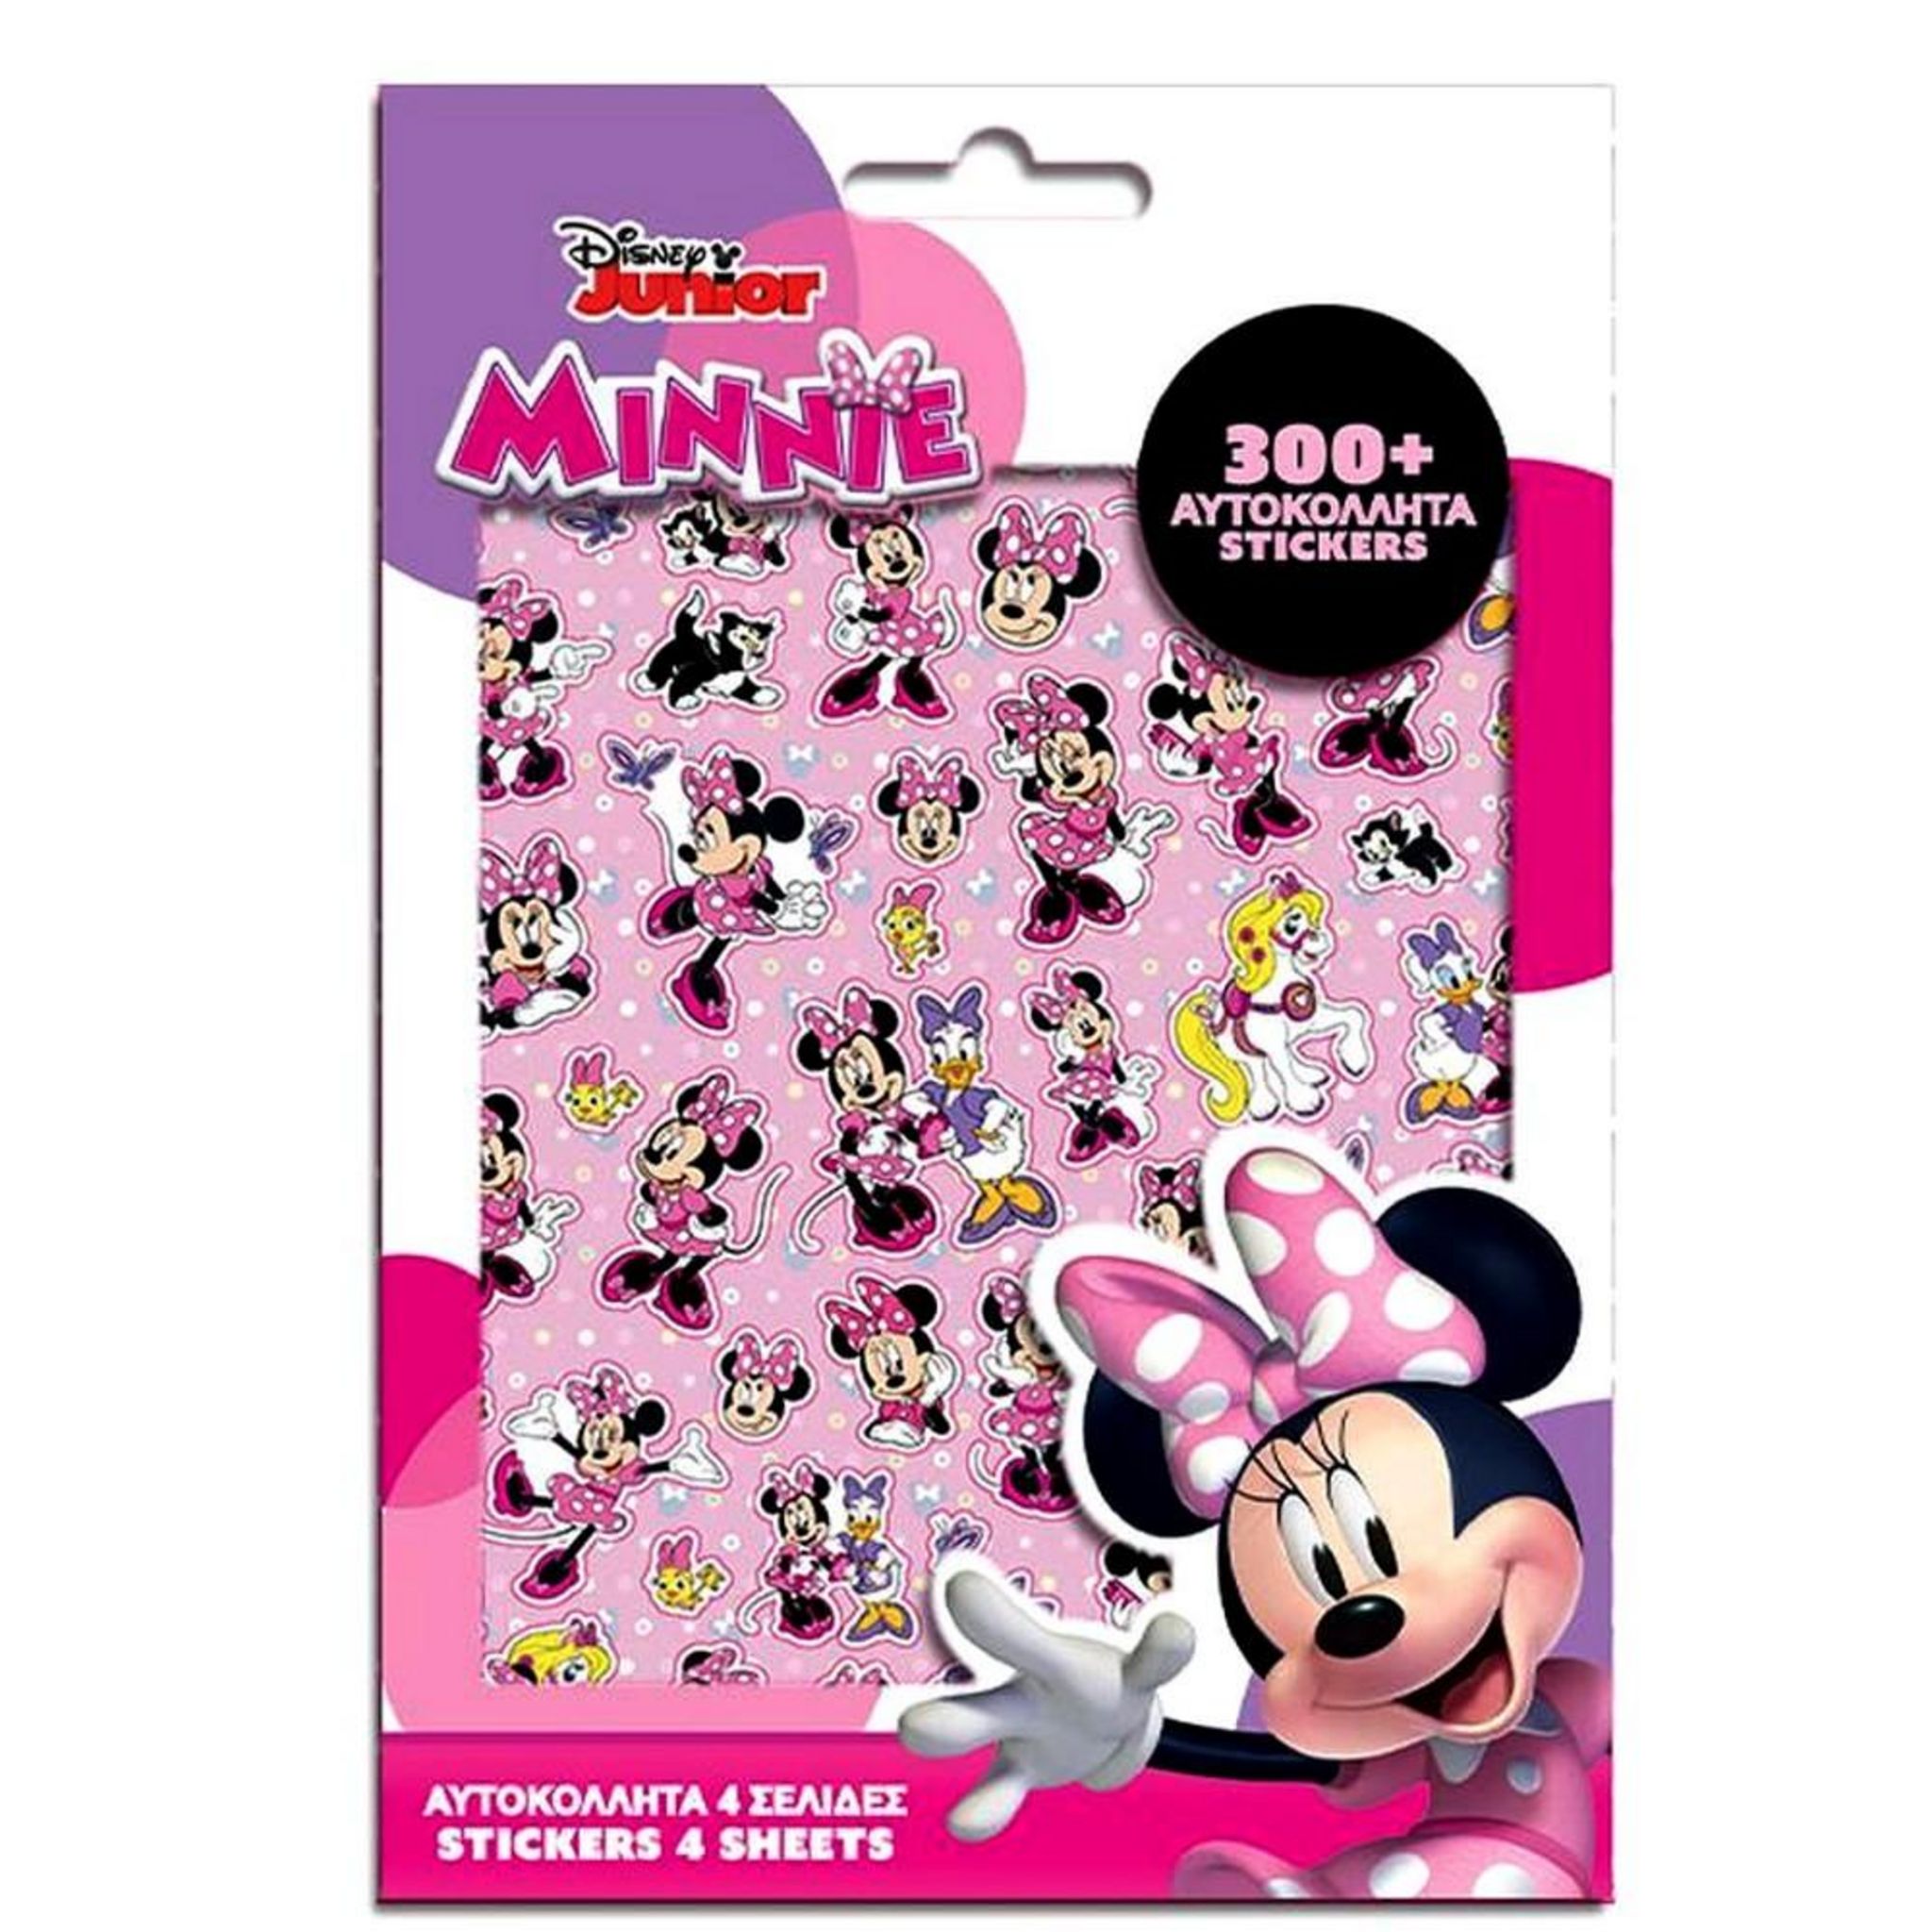 300 stickers Minnie enfant Autocollant pas cher 